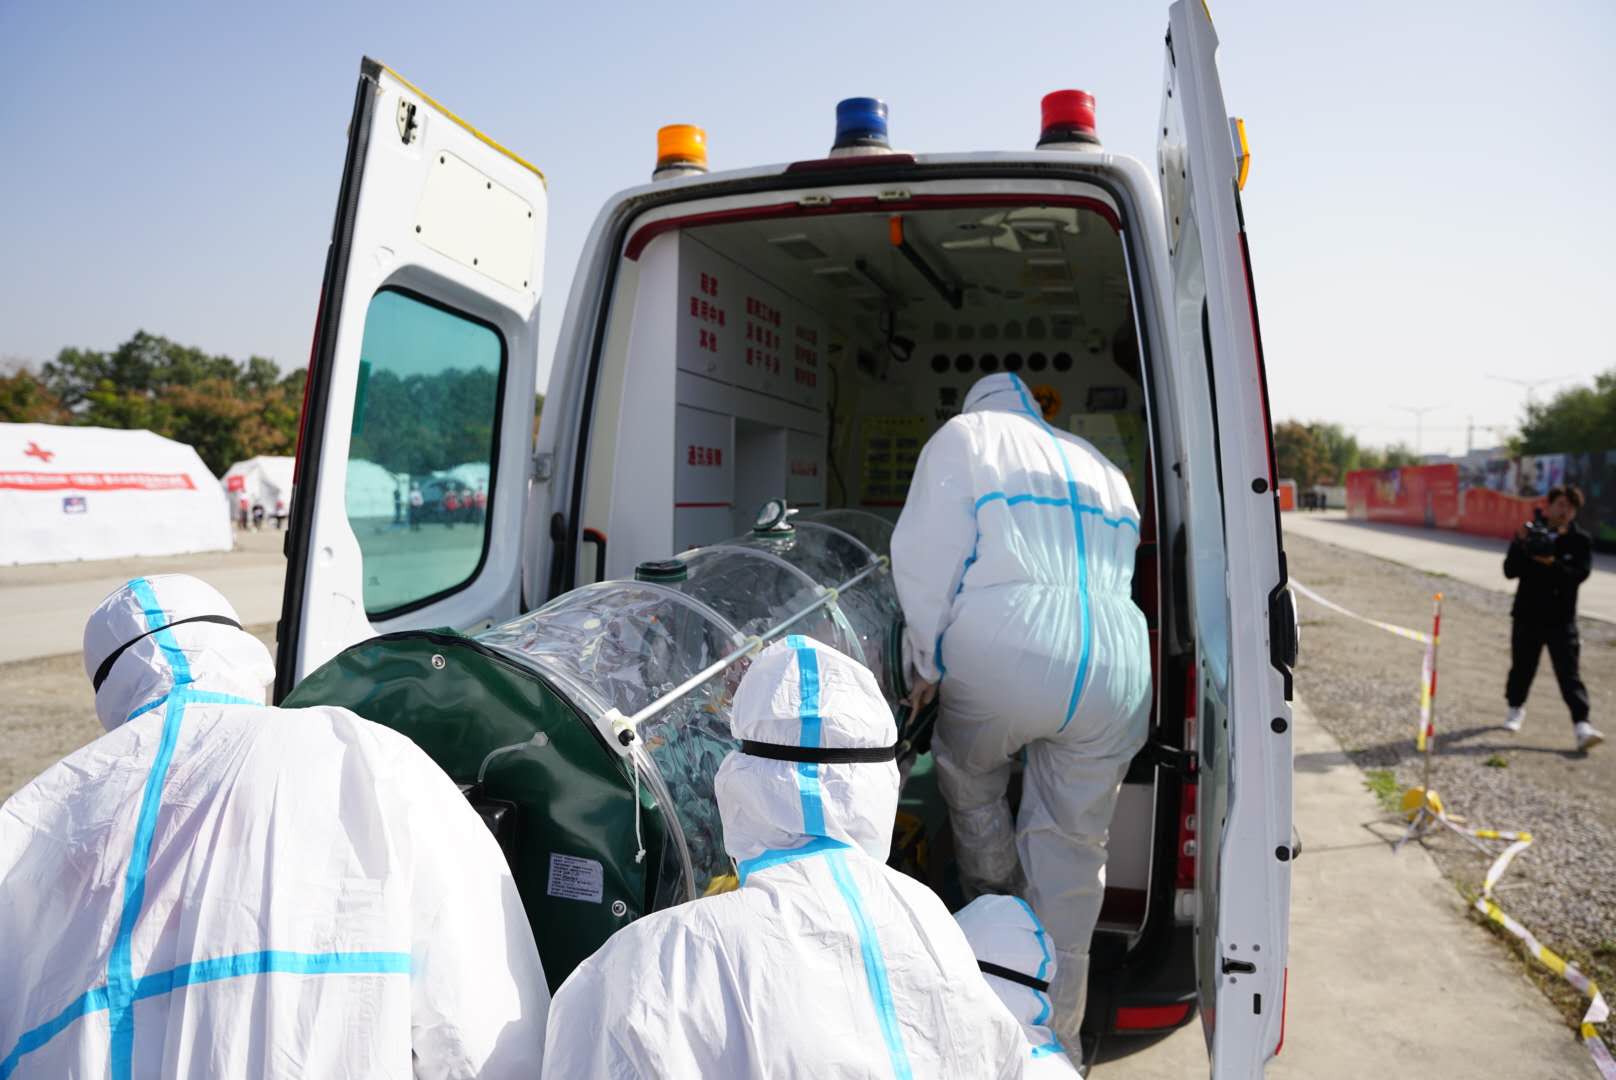 社区发现传染病患者后该如何处置 西北五省区红十字赈济救援队举行演练